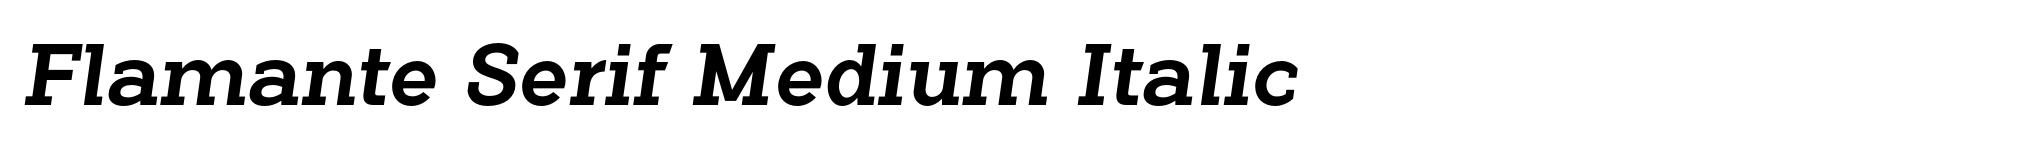 Flamante Serif Medium Italic image